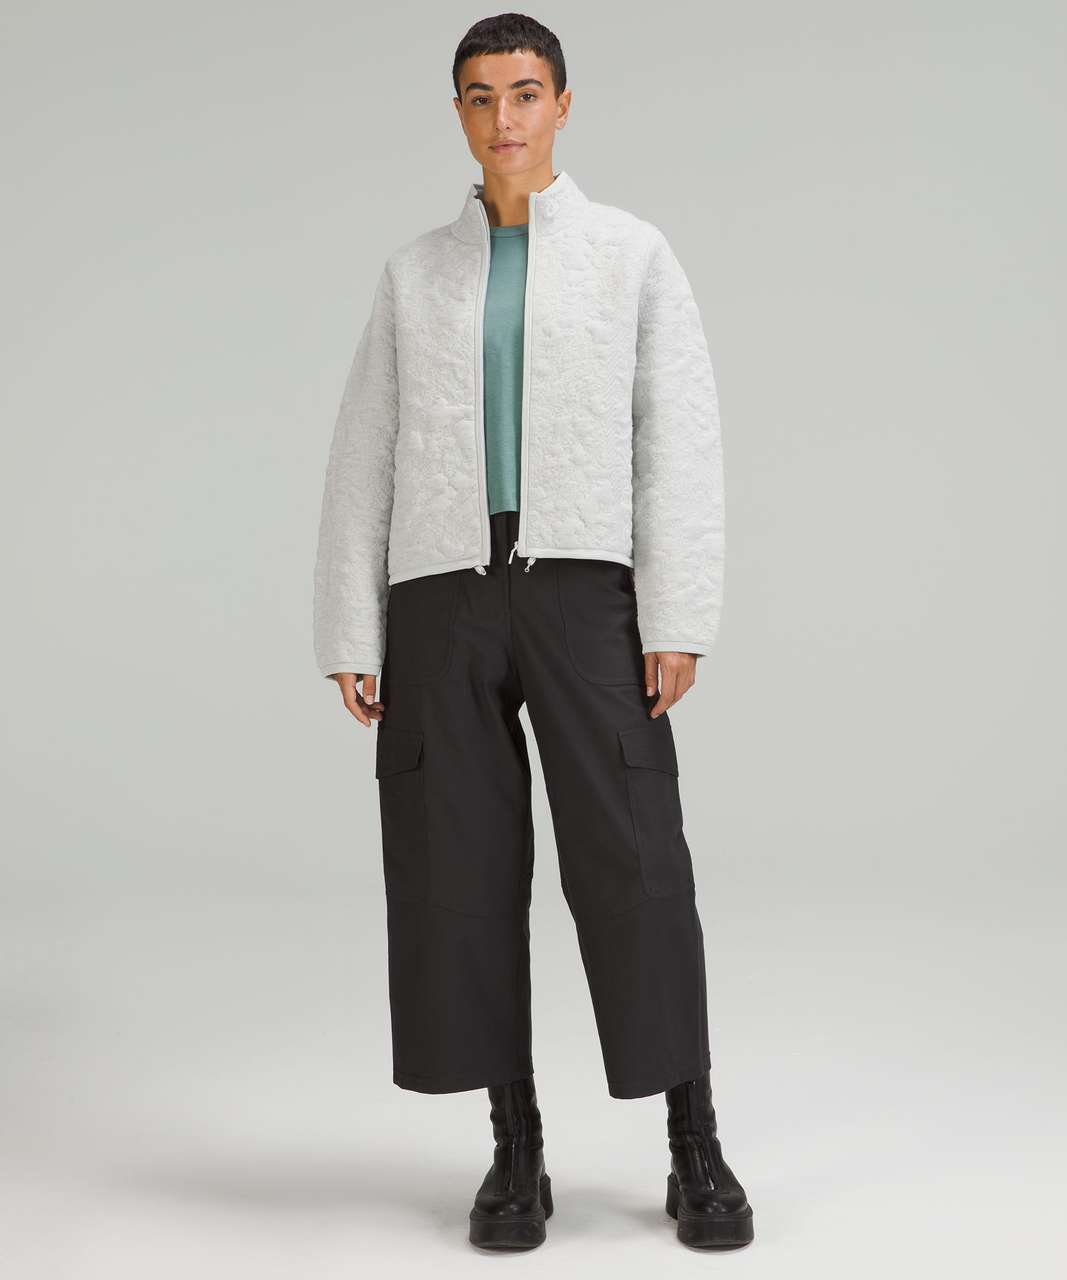 Lululemon Jacquard Multi-Texture Sweater Jacket - Heathered Vapor